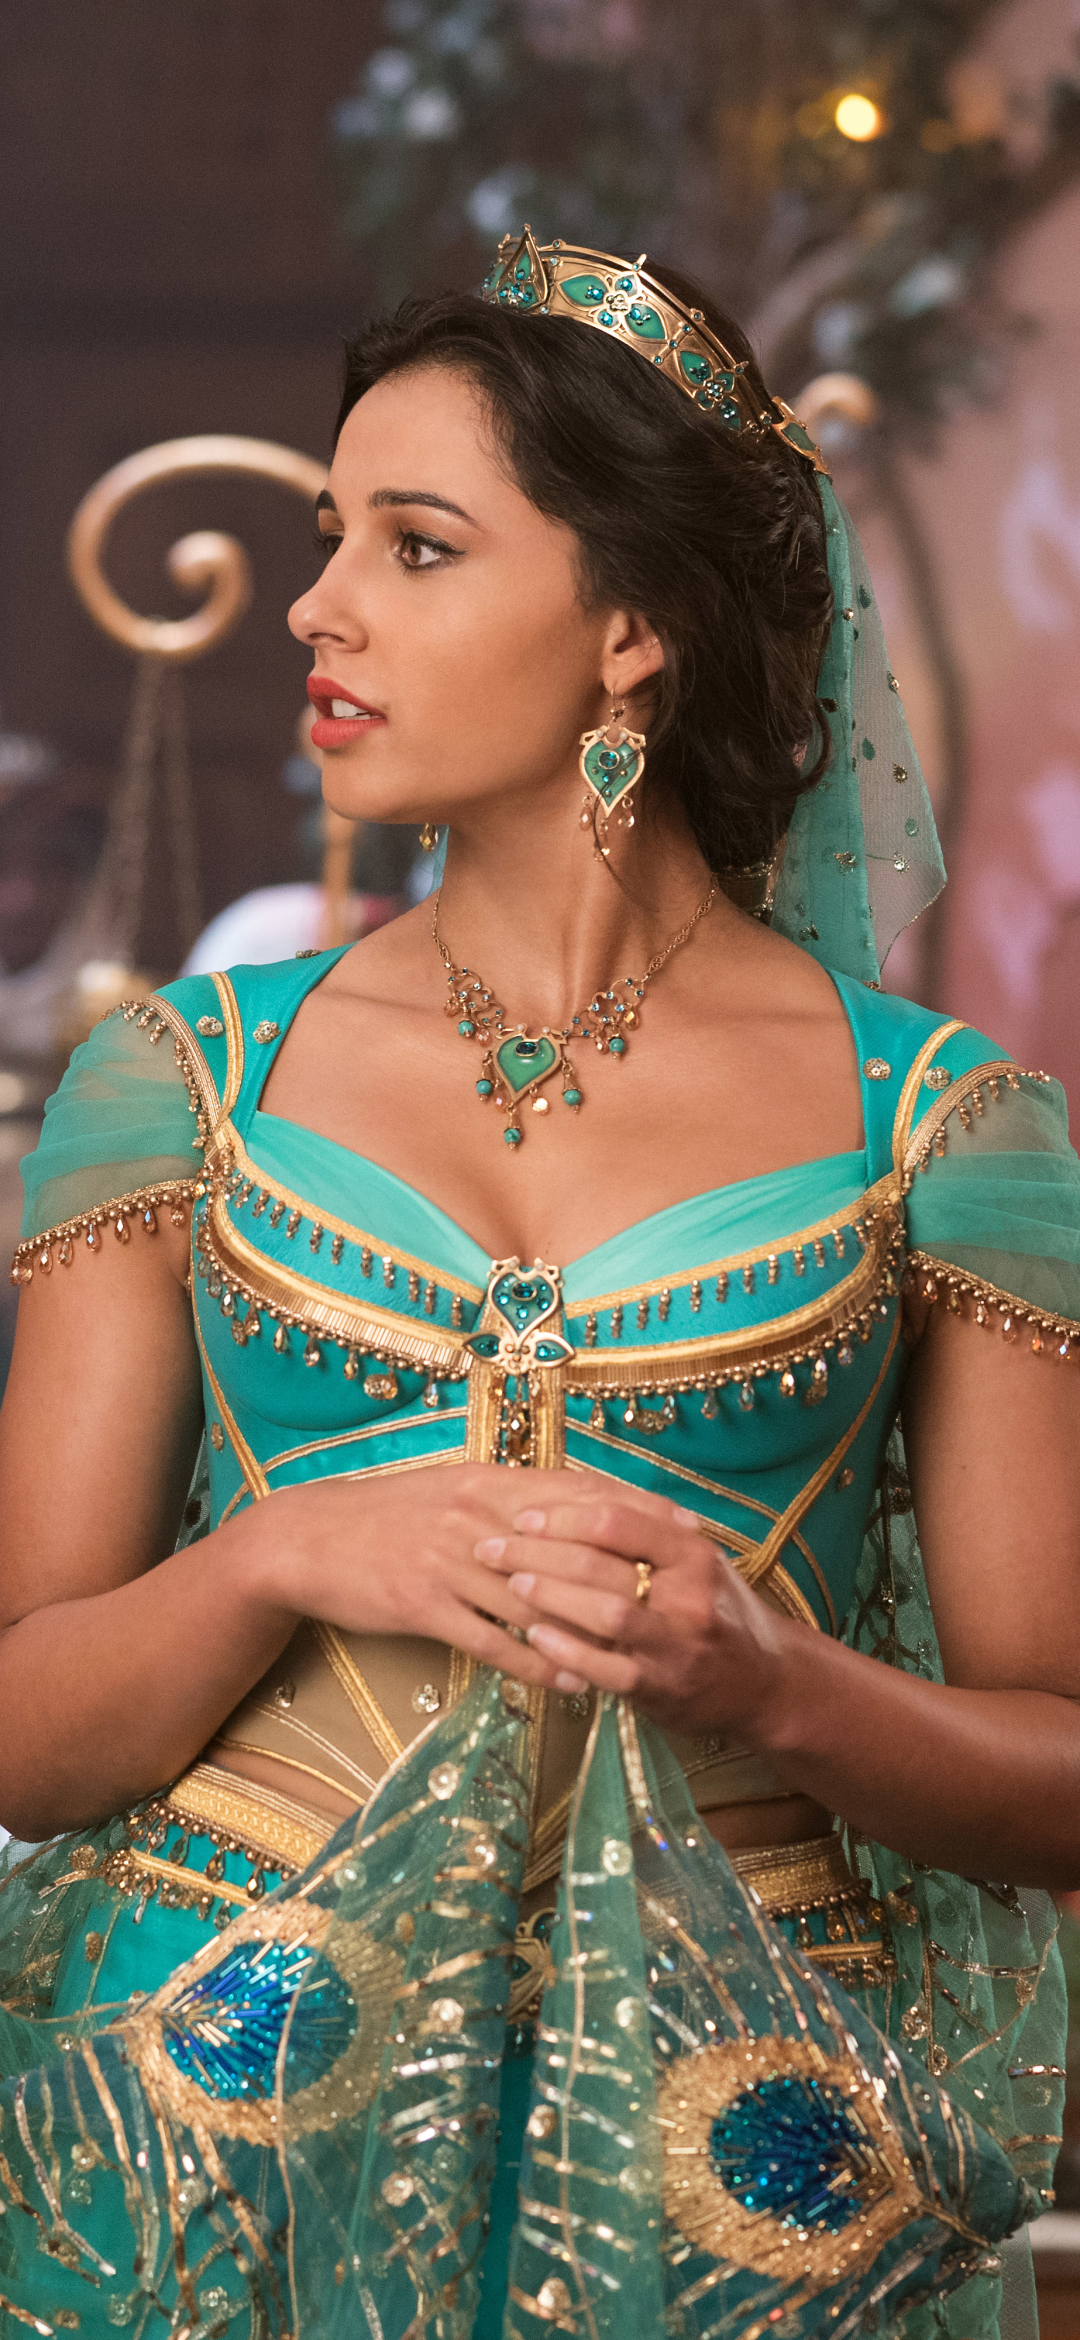 naomi scott, movie, aladdin (2019), princess jasmine